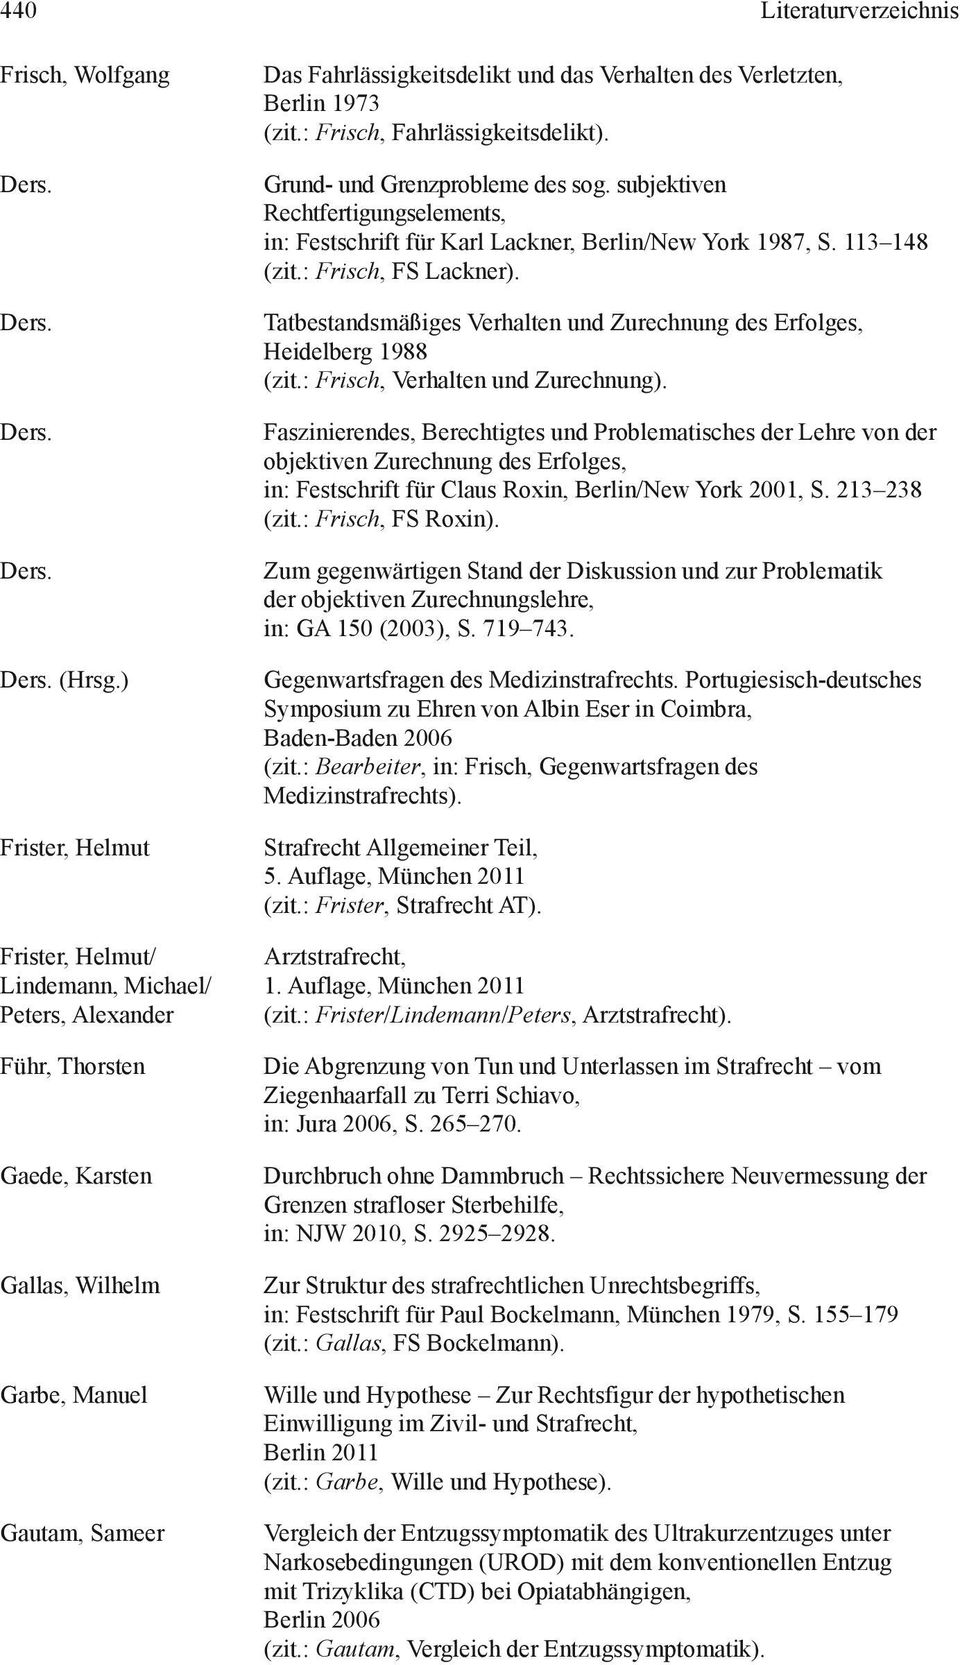 Verletzten, Berlin 1973 (zit.: Frisch, Fahrlässigkeitsdelikt). Grund- und Grenzprobleme des sog. subjektiven Rechtfertigungselements, in: Festschrift für Karl Lackner, Berlin/New York 1987, S.